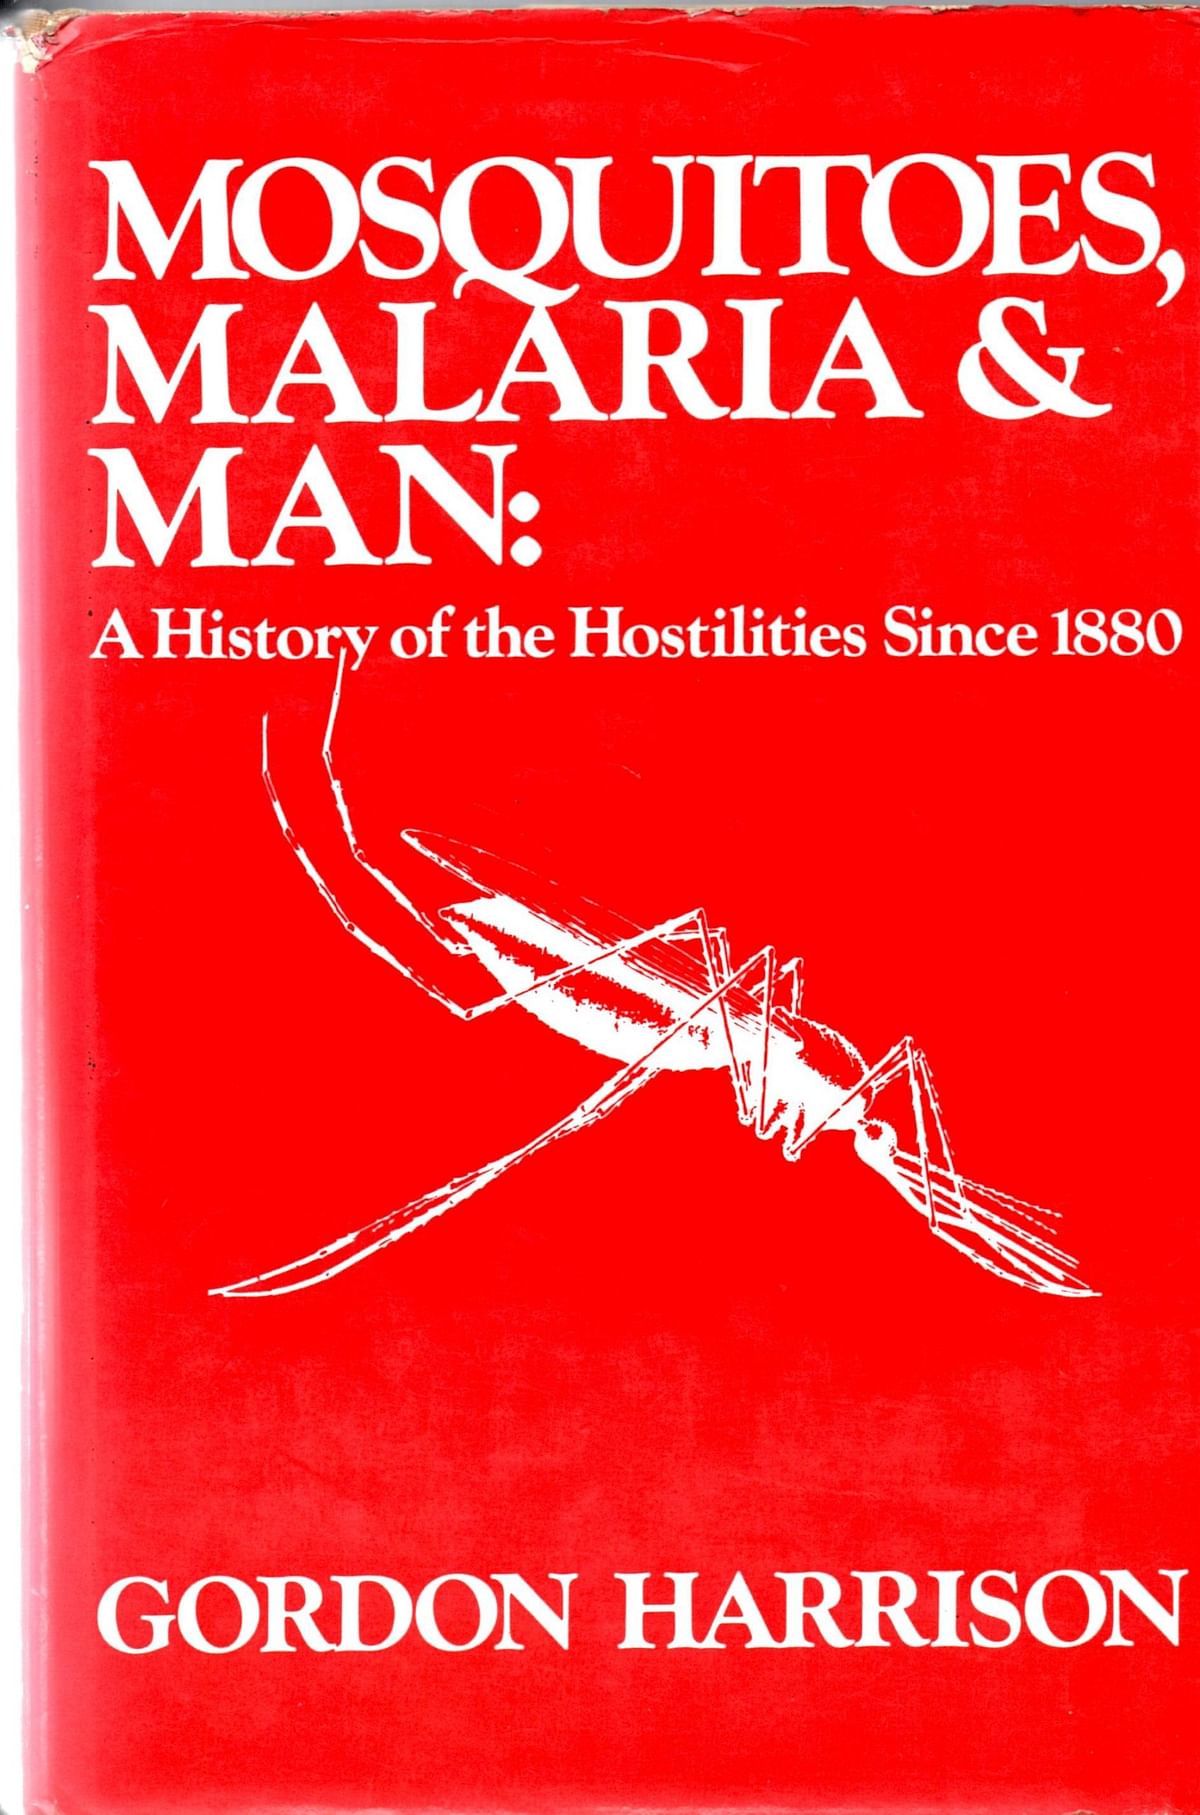 घाना, केन्या और मालावी में परीक्षण के बाद RTS, S/AS01 मलेरिया वैक्सीन अब अफ्रीका के बच्चों को भी लगेगी.